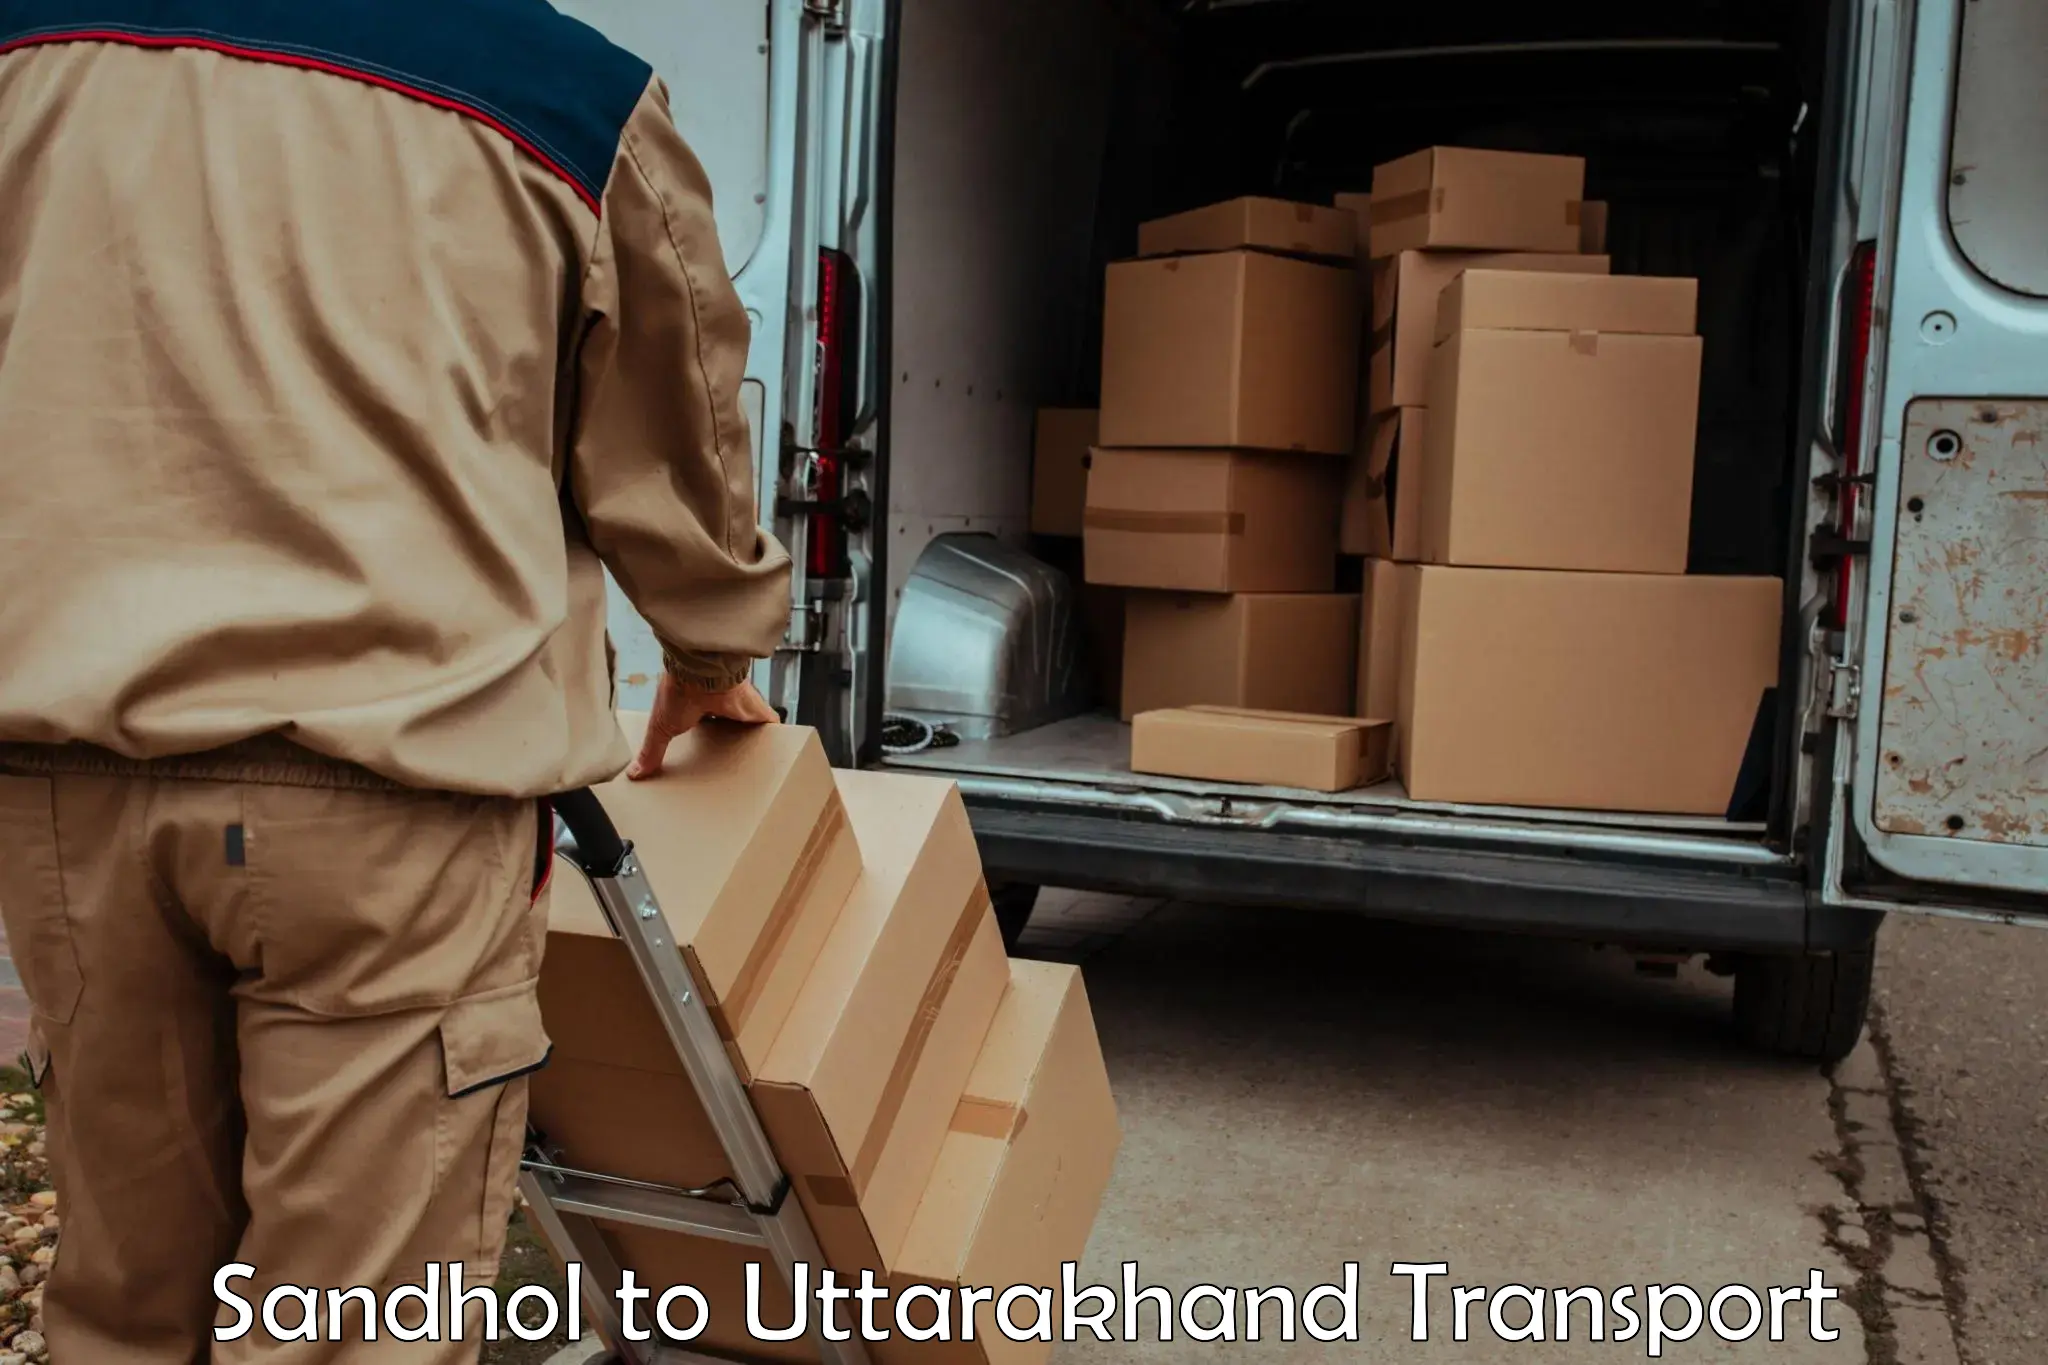 Nationwide transport services Sandhol to Uttarakhand